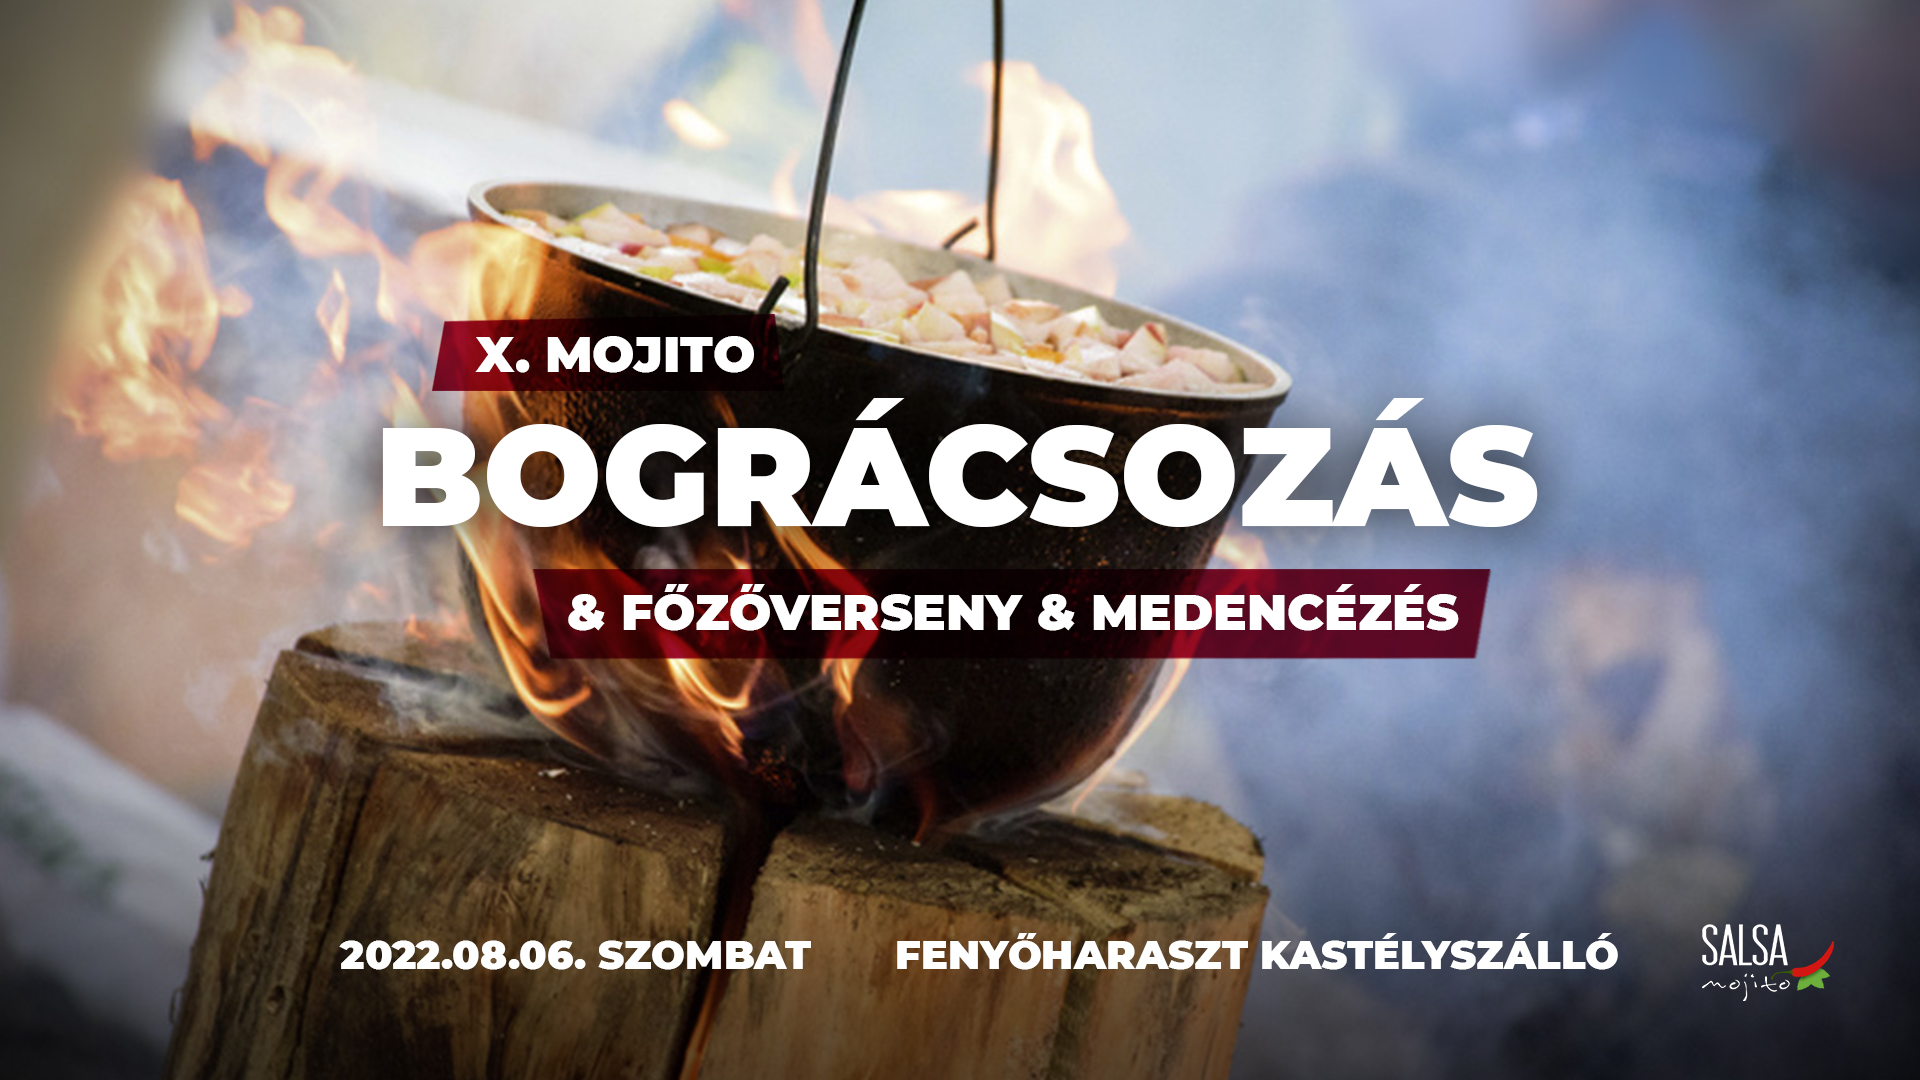 X. Mojito Bográcsozás & Főzőverseny & Medencézés 2022